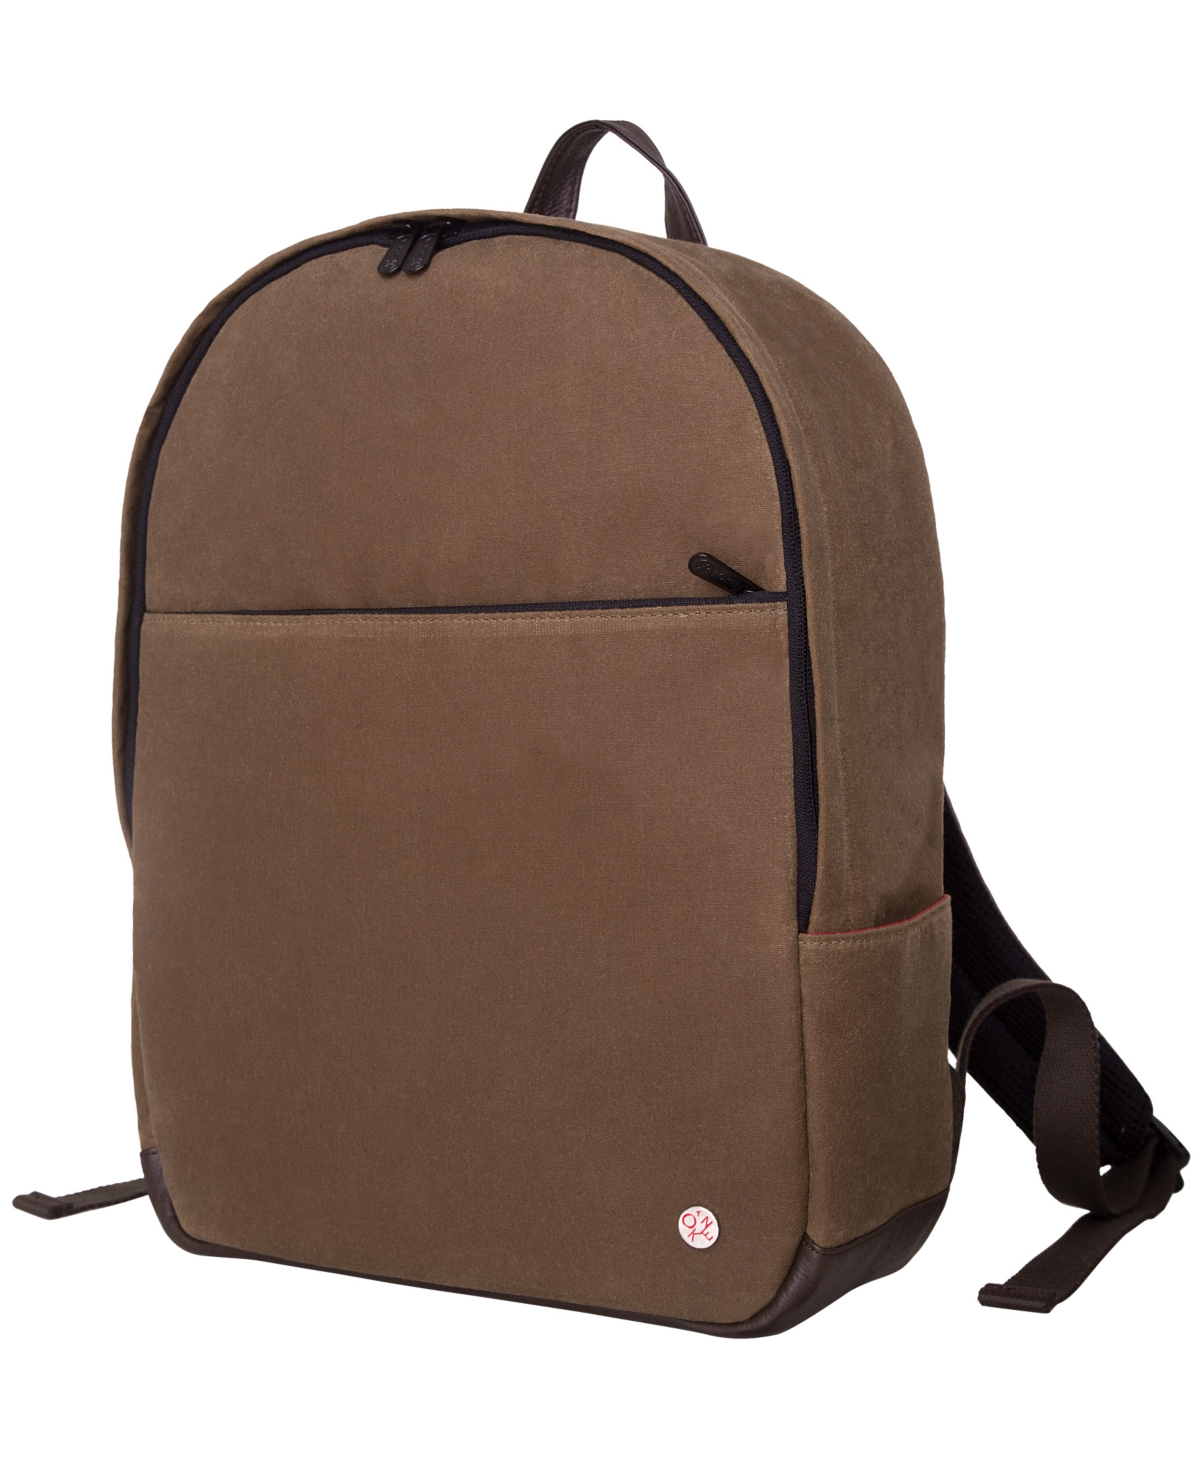 University Waxed Medium Backpack - Tan